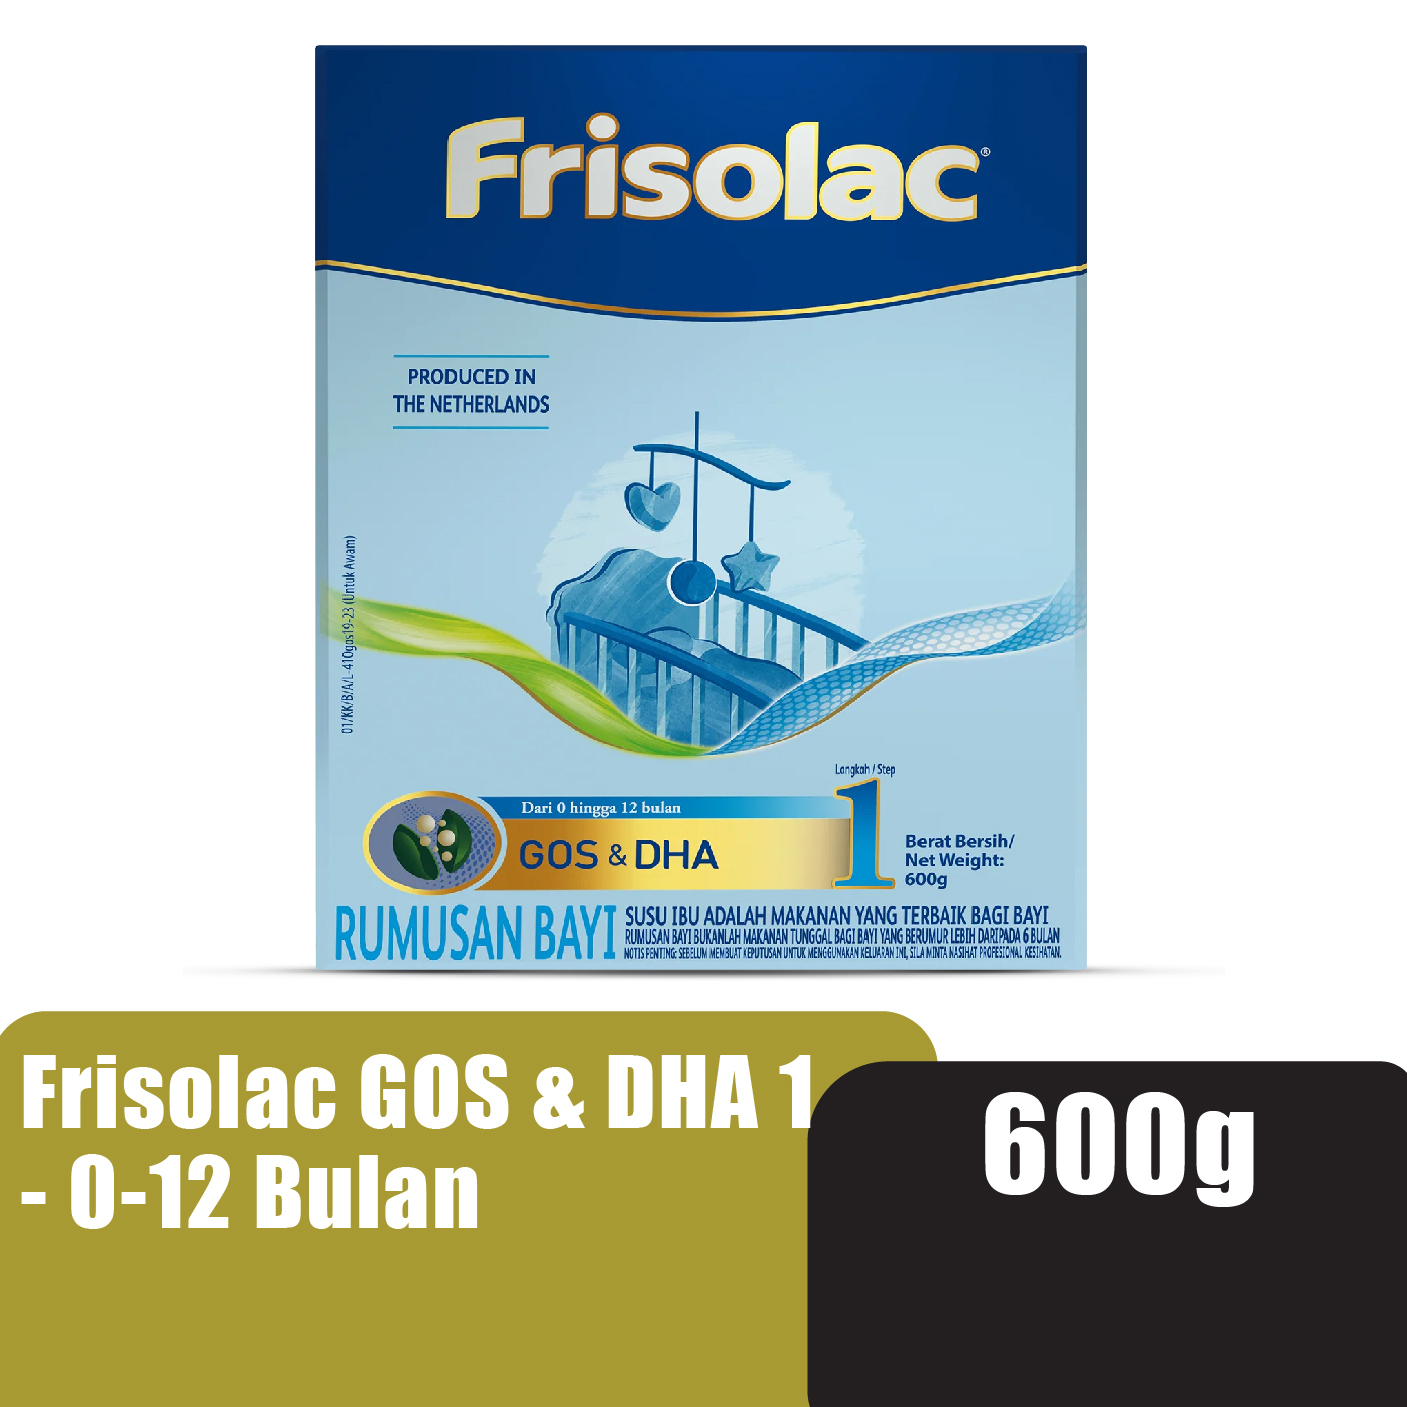 FRISOLAC Gos & Dha Step 1 (0-12 Bulan) Milk Powder 600g - Susu Tepung Infant / Baby Milk Formula 奶粉